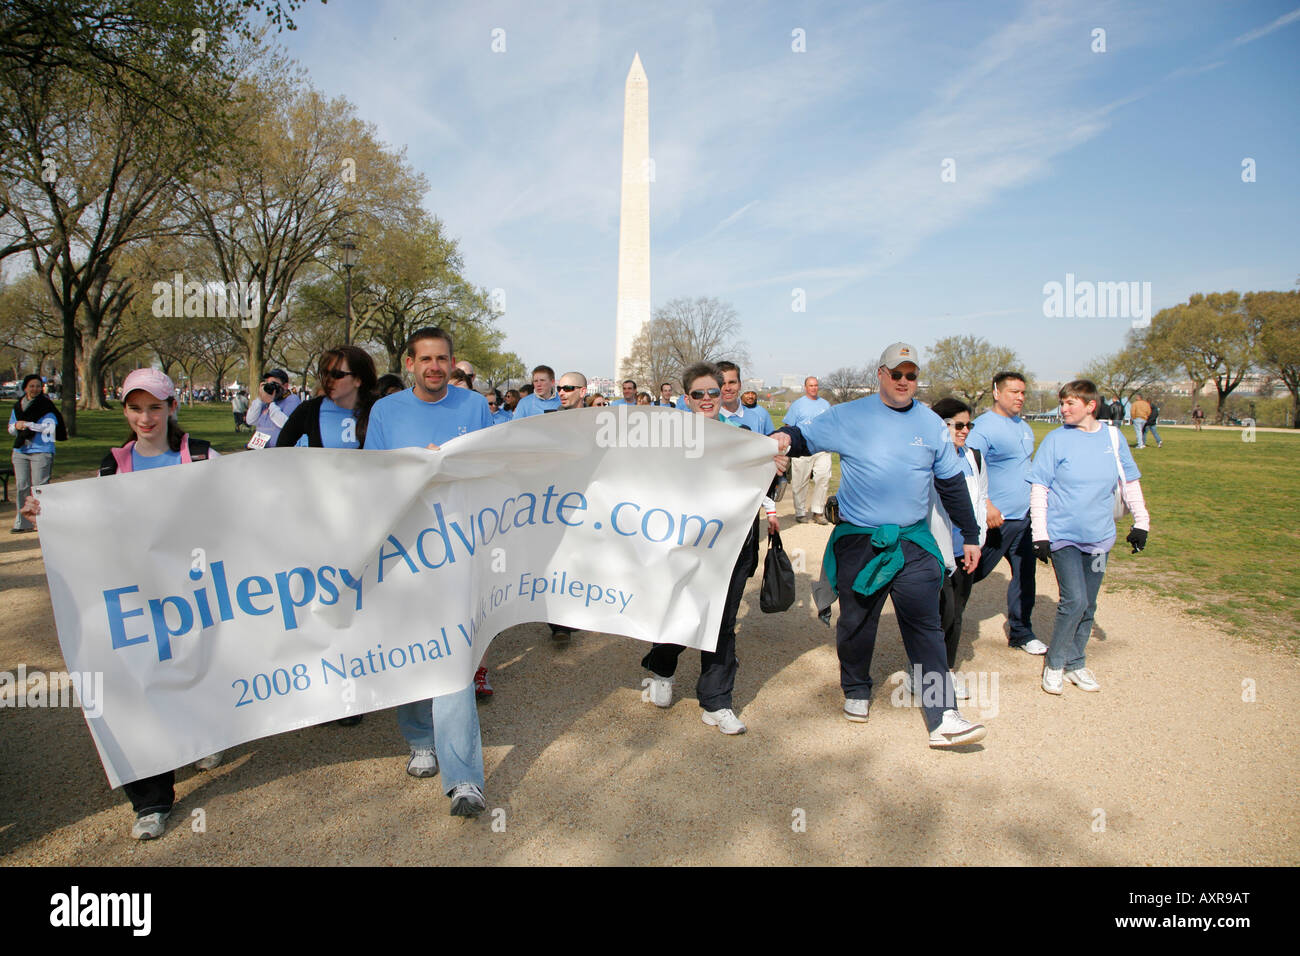 Démonstration de l'épilepsie à pied, le Monument de Washington, Washington DC, USA Banque D'Images